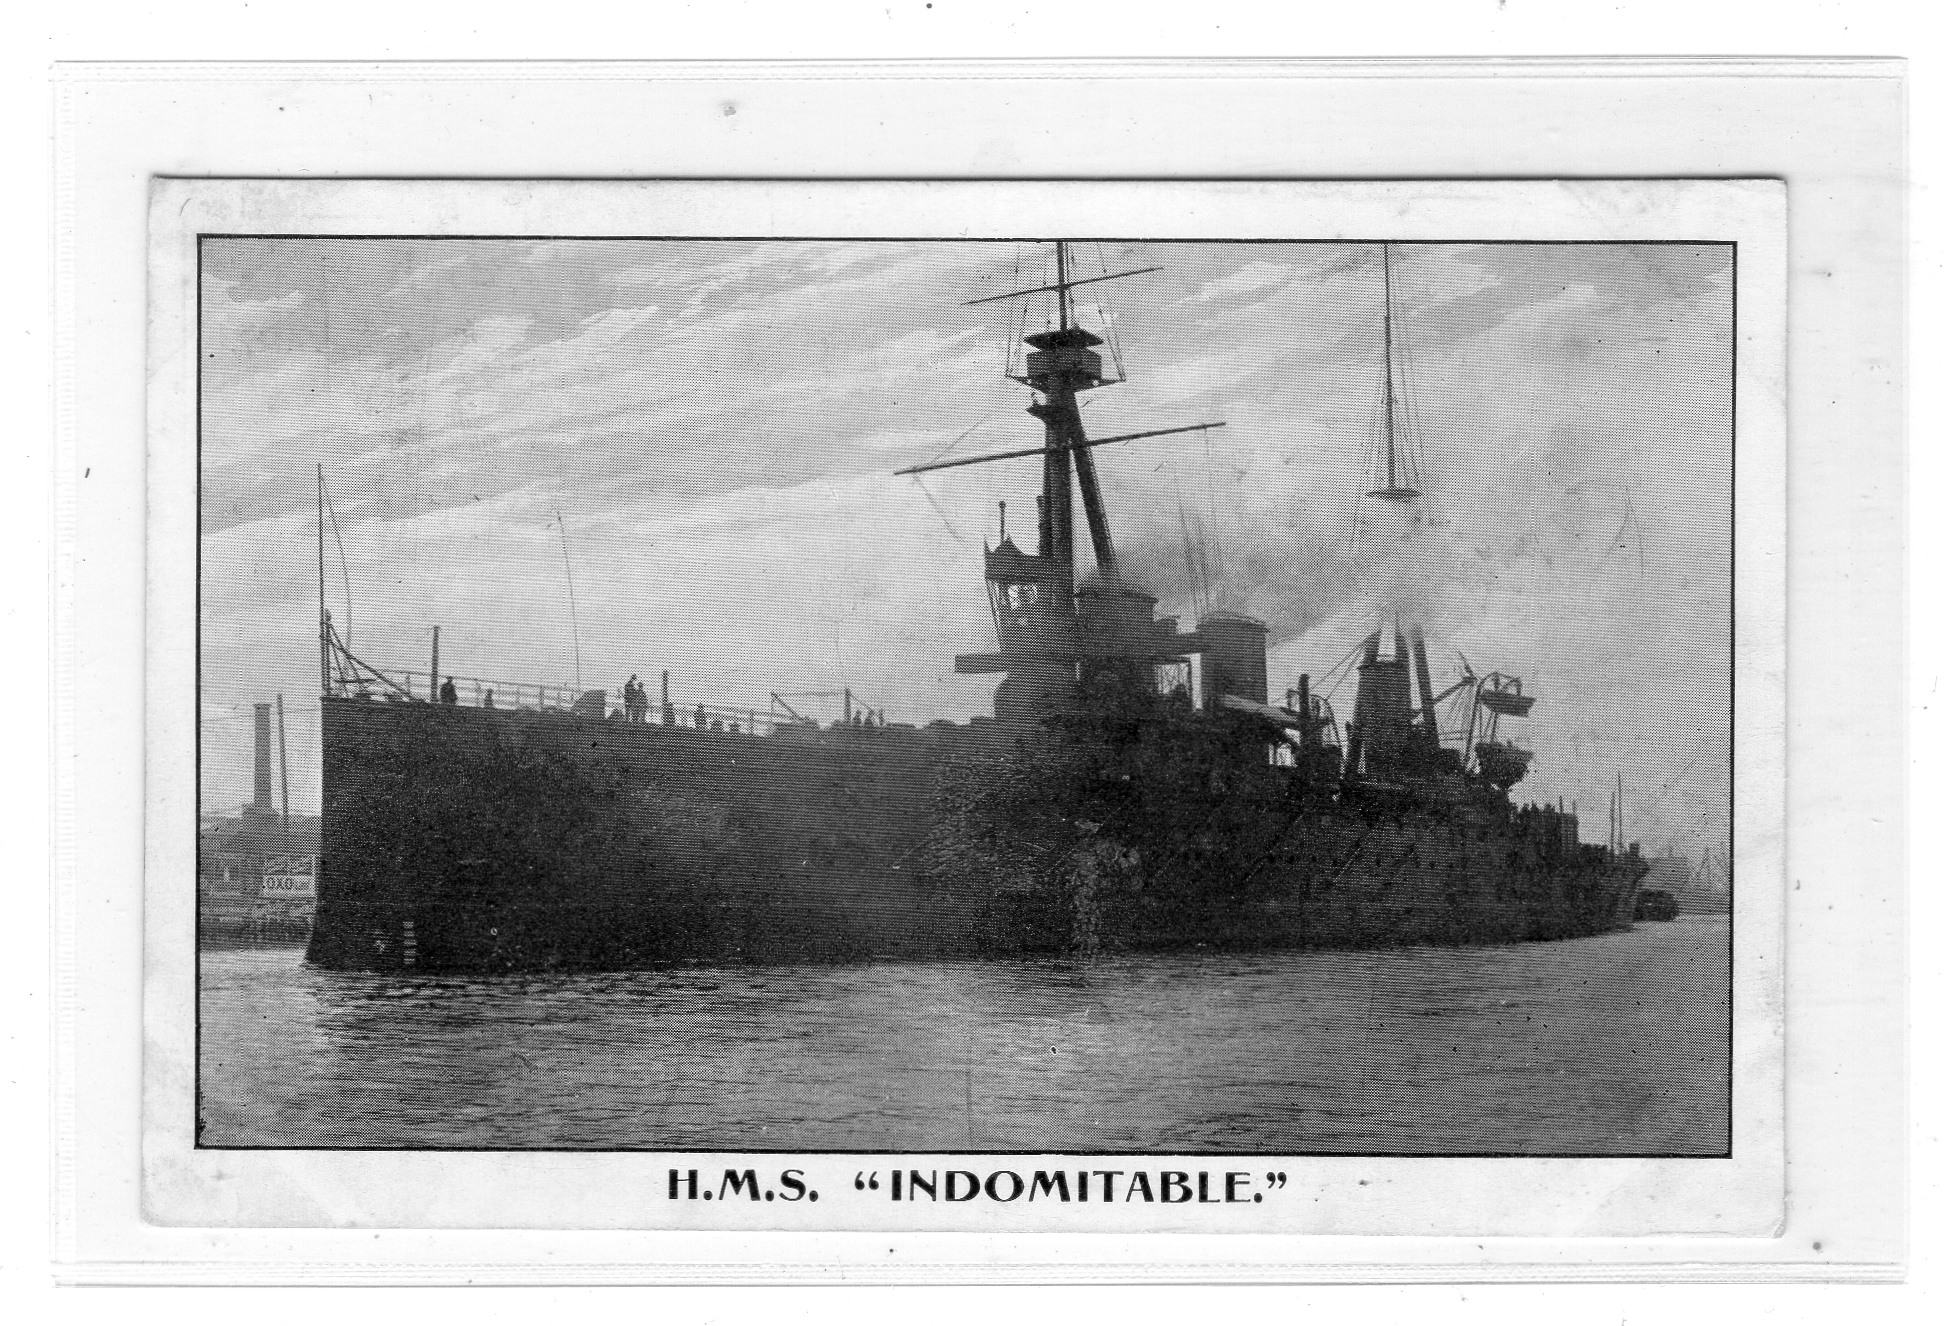 HMS "Indomitable" Thompson